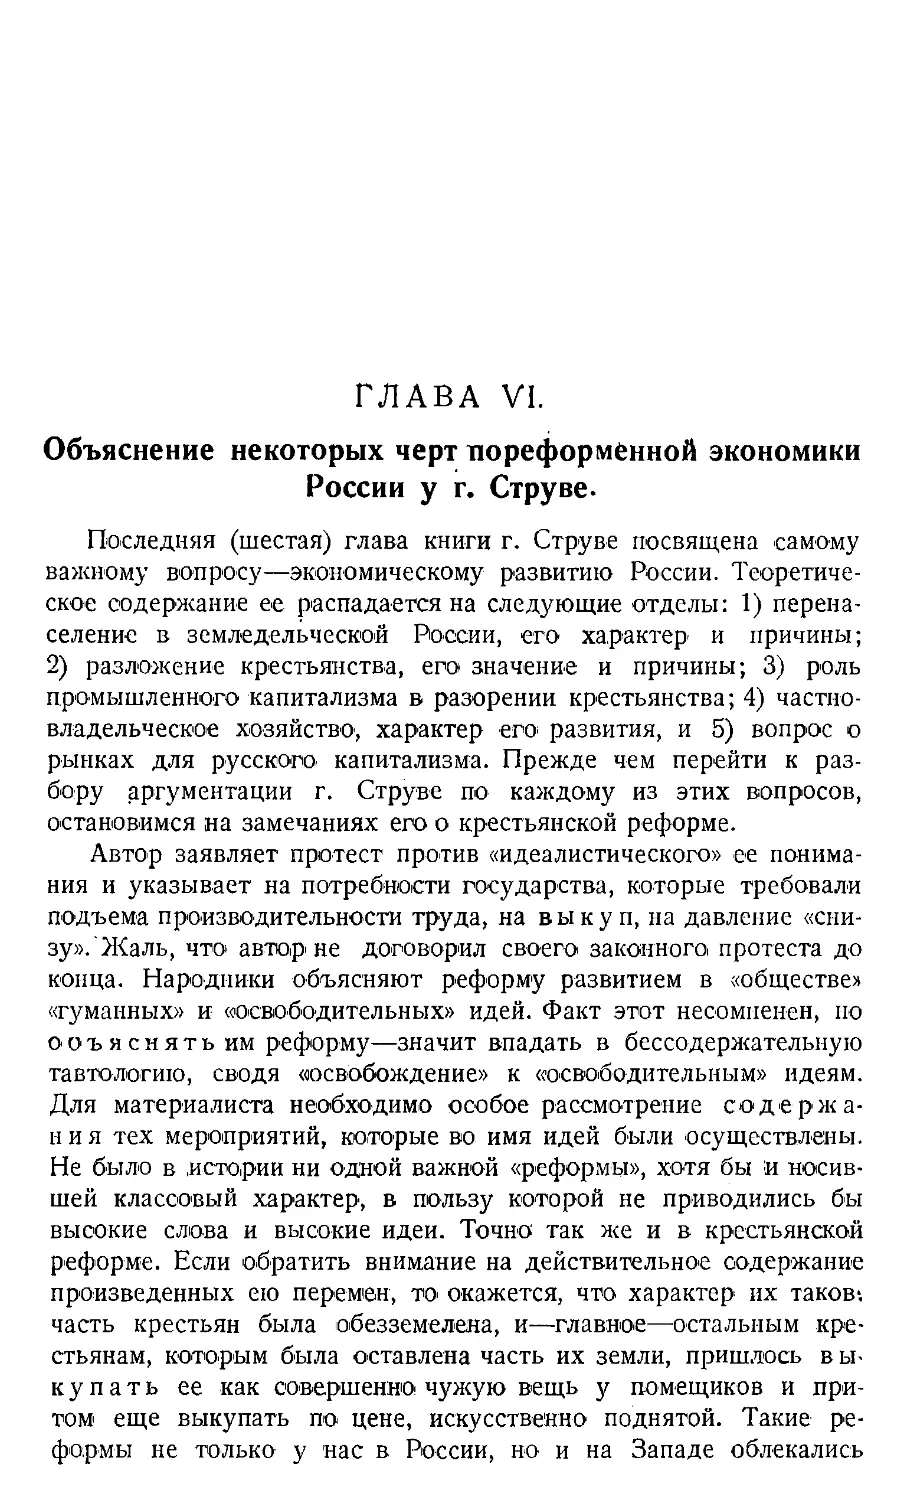 Глава IV. Объяснение некоторых черт пореформенной экономики России у г. Струве